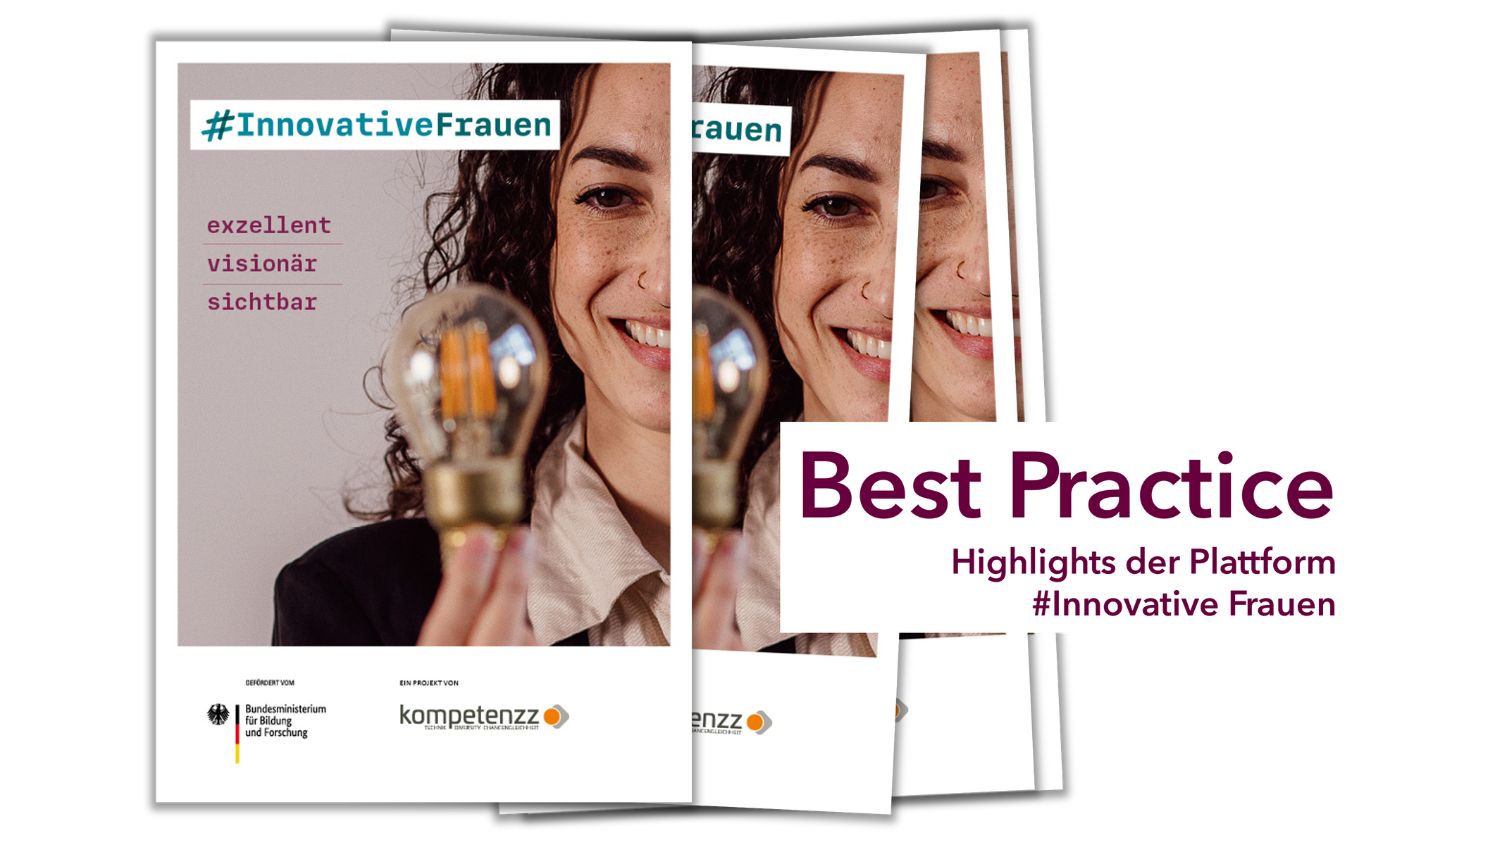 Titelbild der BestPractice-Broschüre der Plattform #InnovativeFrauen